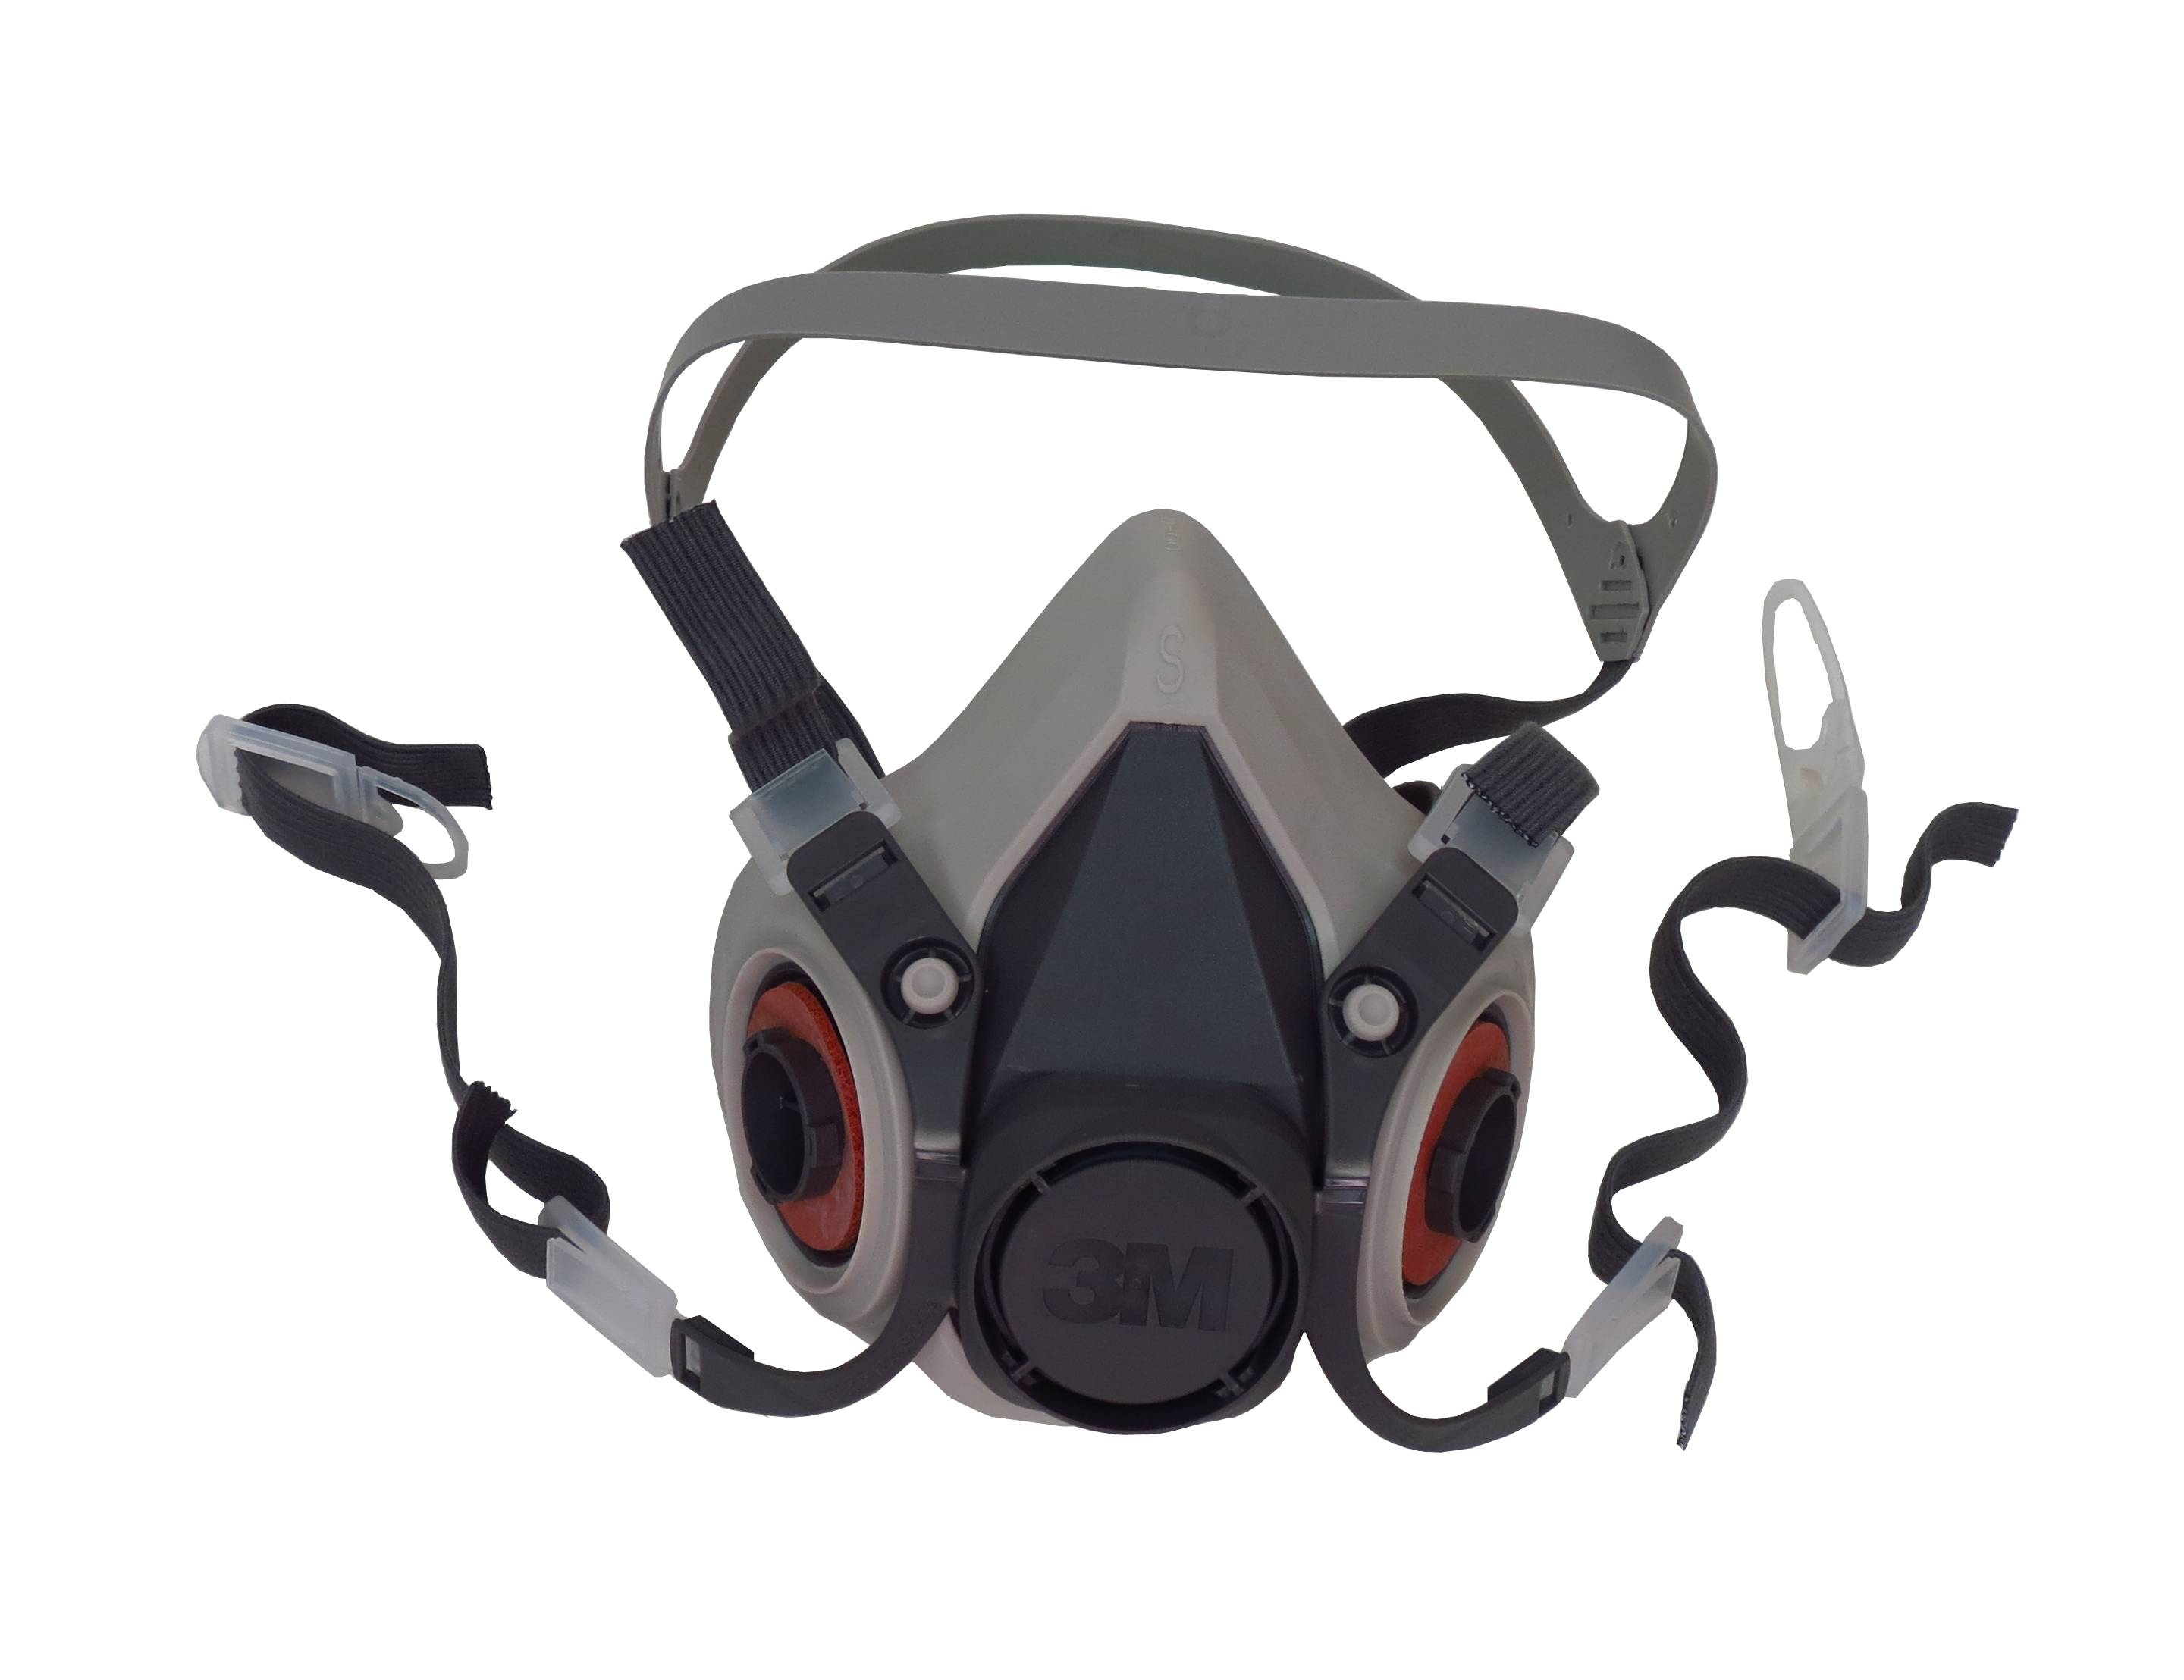 Demi-masque de protection respiratoire de série 6000 de 3M. Homologué NIOSH  Cartouche et filtre non-inclus. Petit.